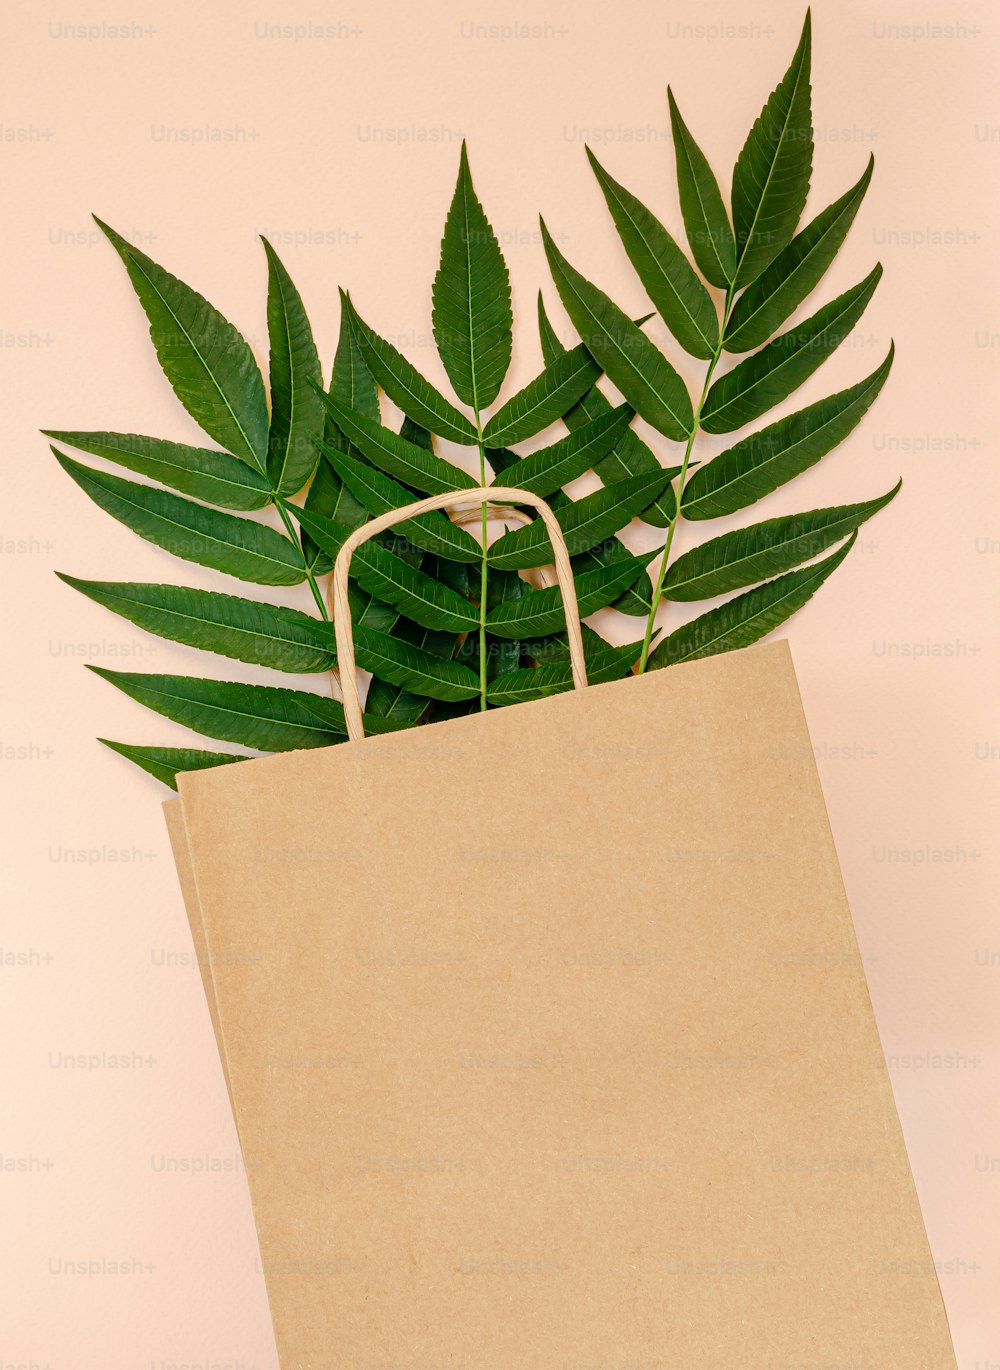 Maquete de saco de papel artesanal com folhas verdes no fundo rosa. Conceito de desperdício zero